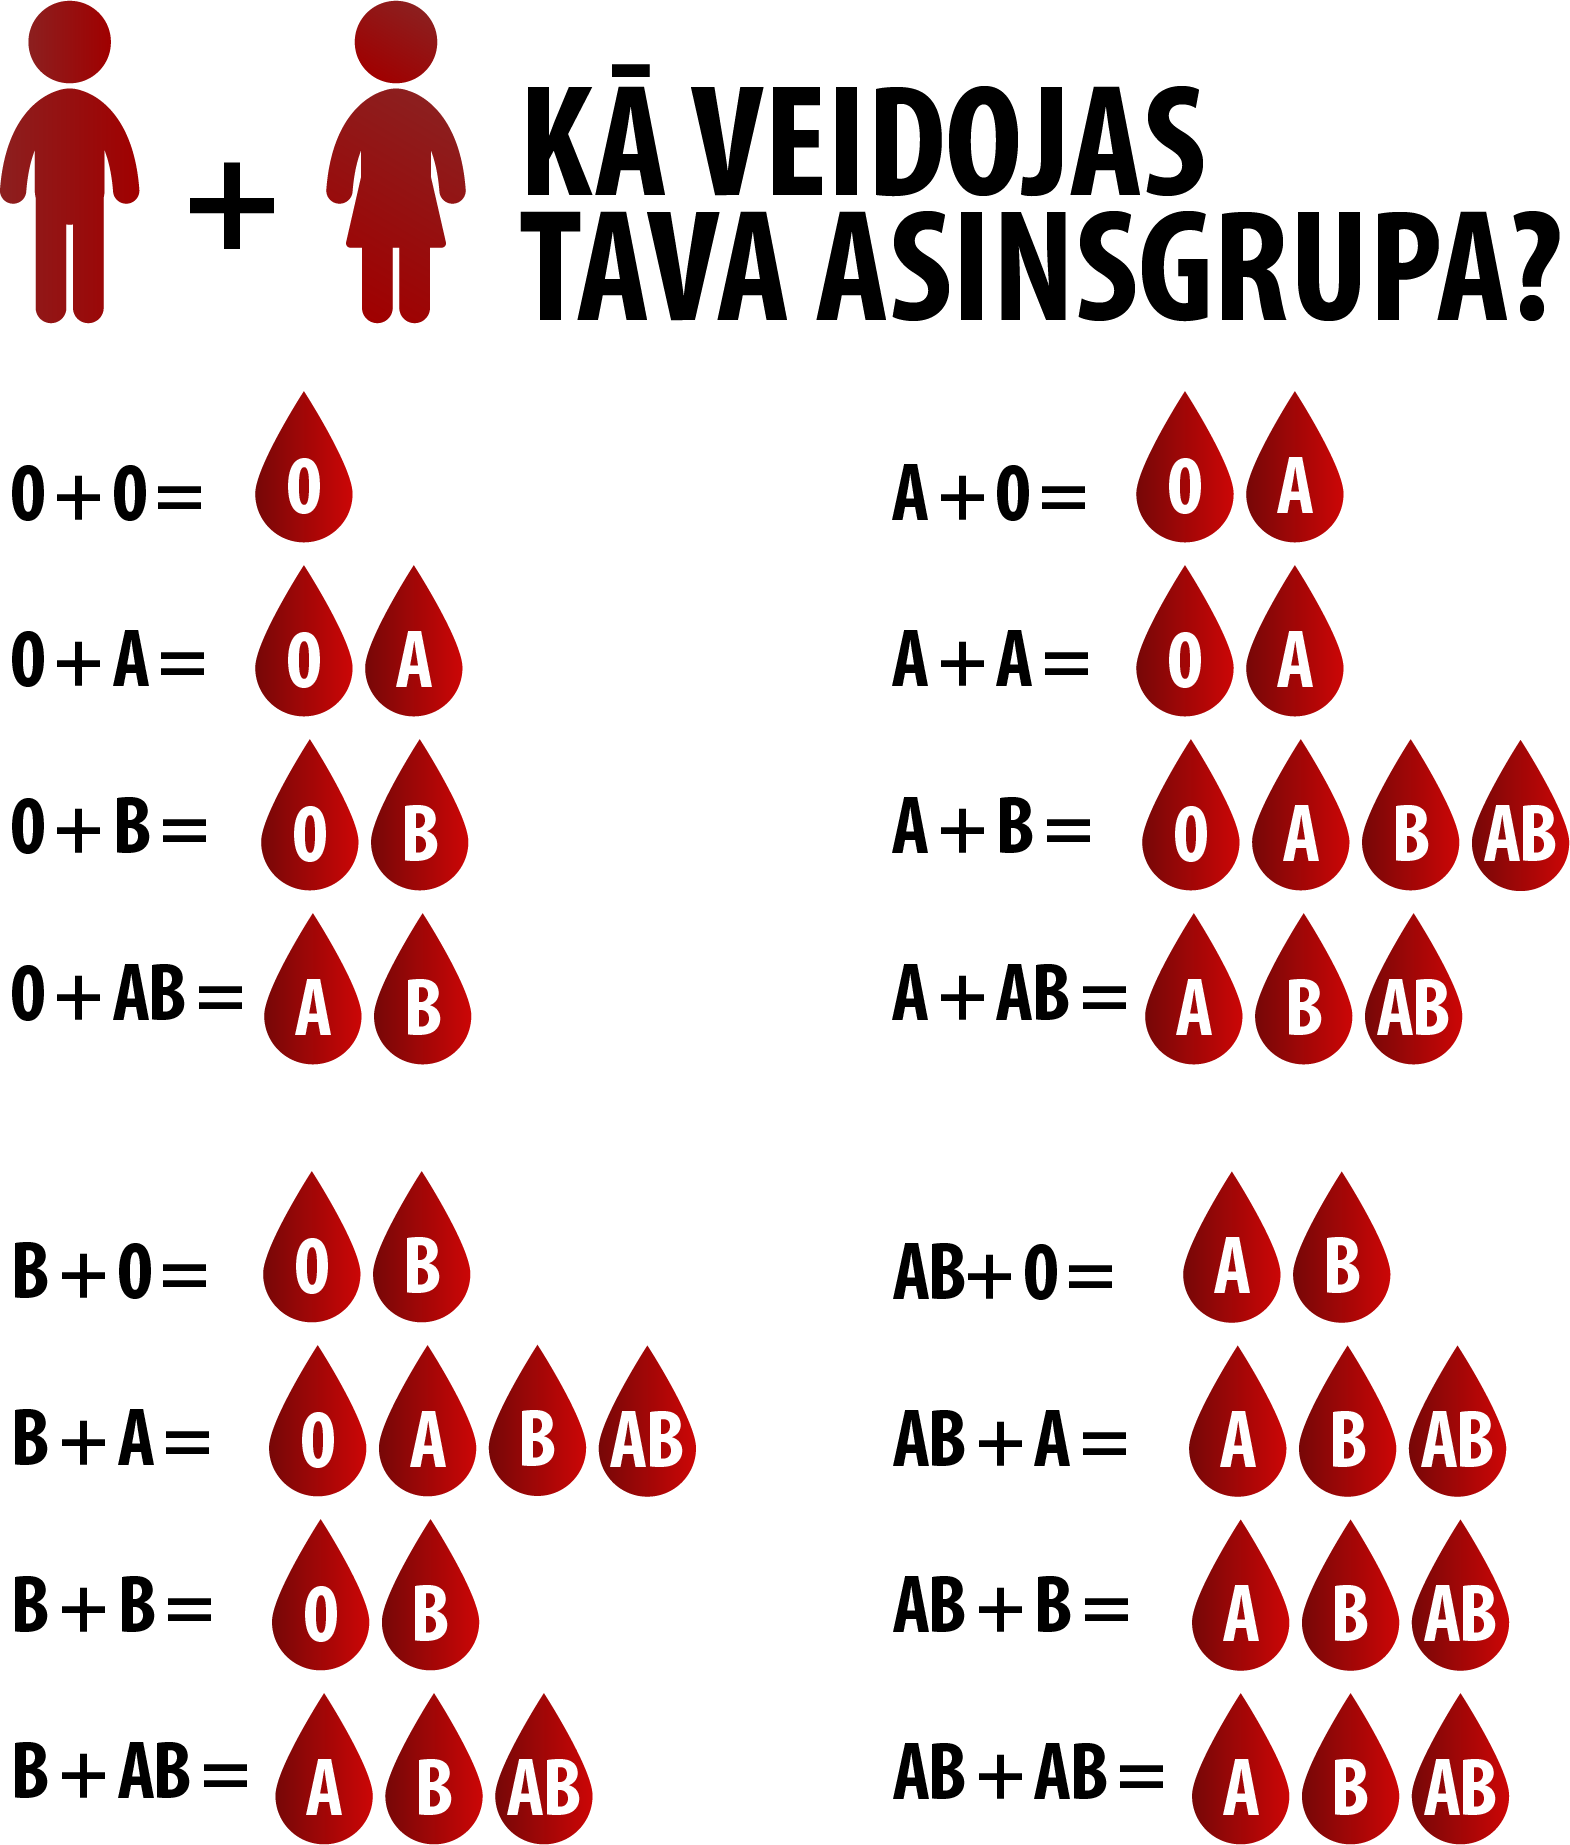 Связь групп крови детей и родителей